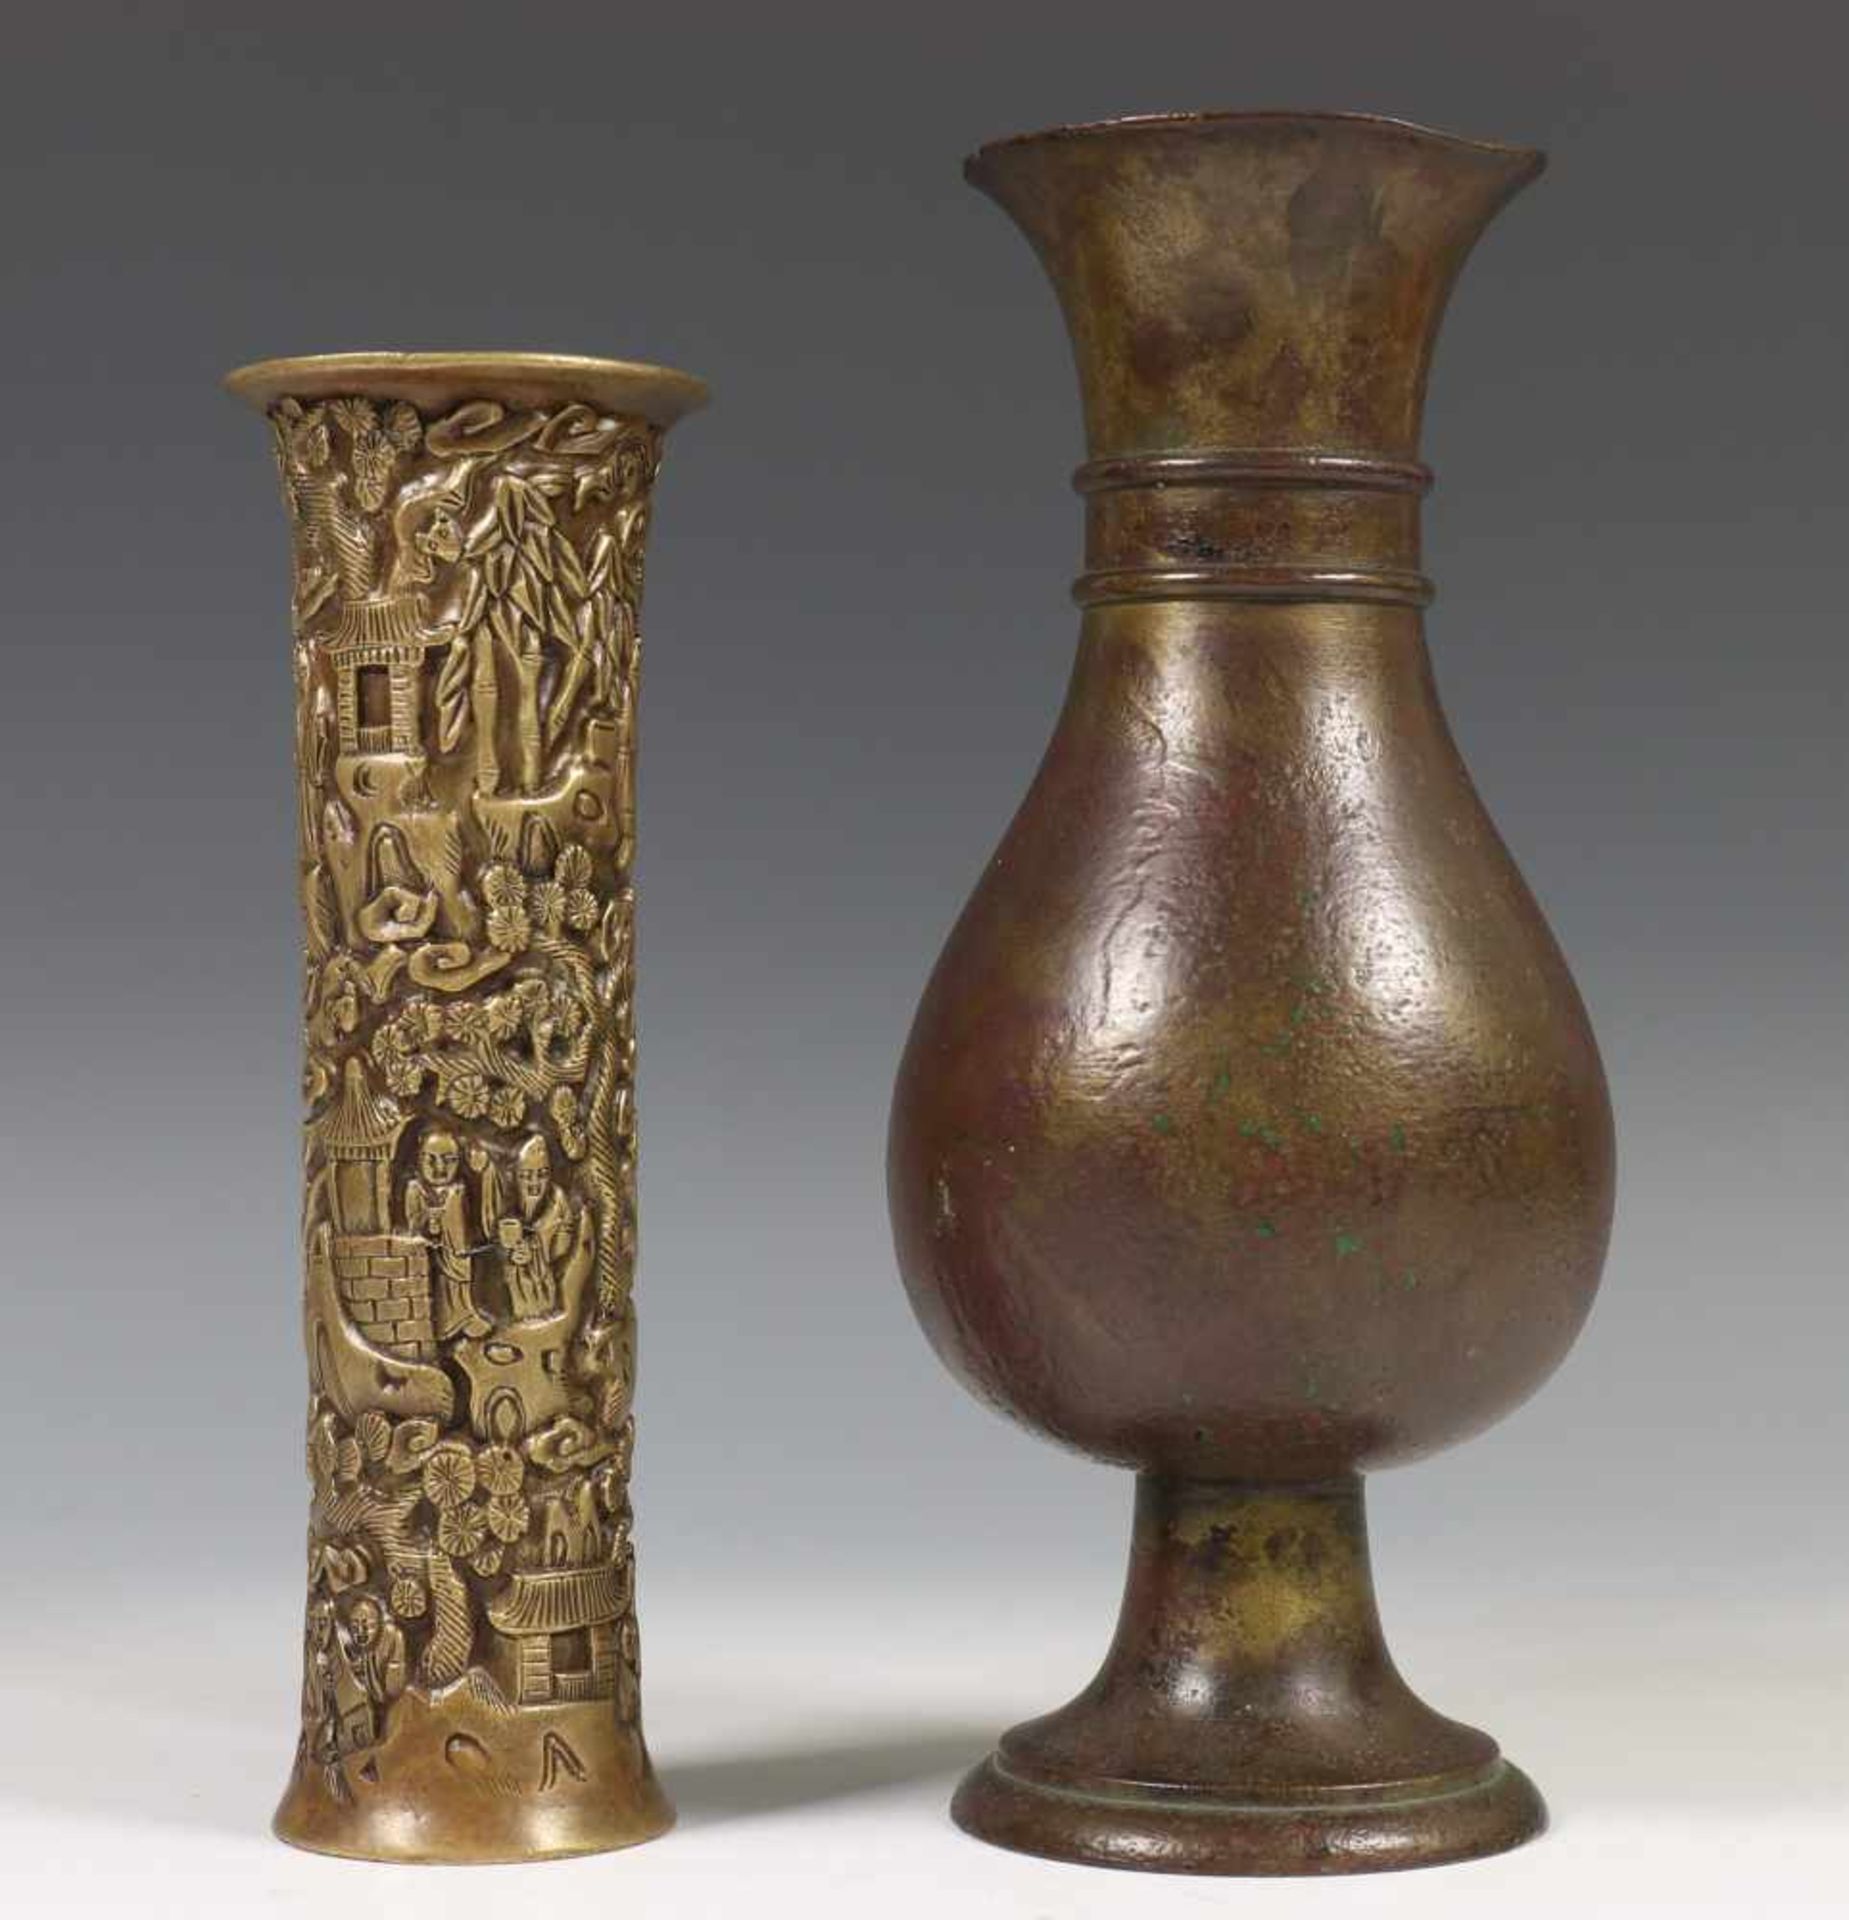 China, twee bronzen vazen, Ming-Qing dynastie,een cilindervormige vaas gemodelleerd met figuren in - Bild 2 aus 4